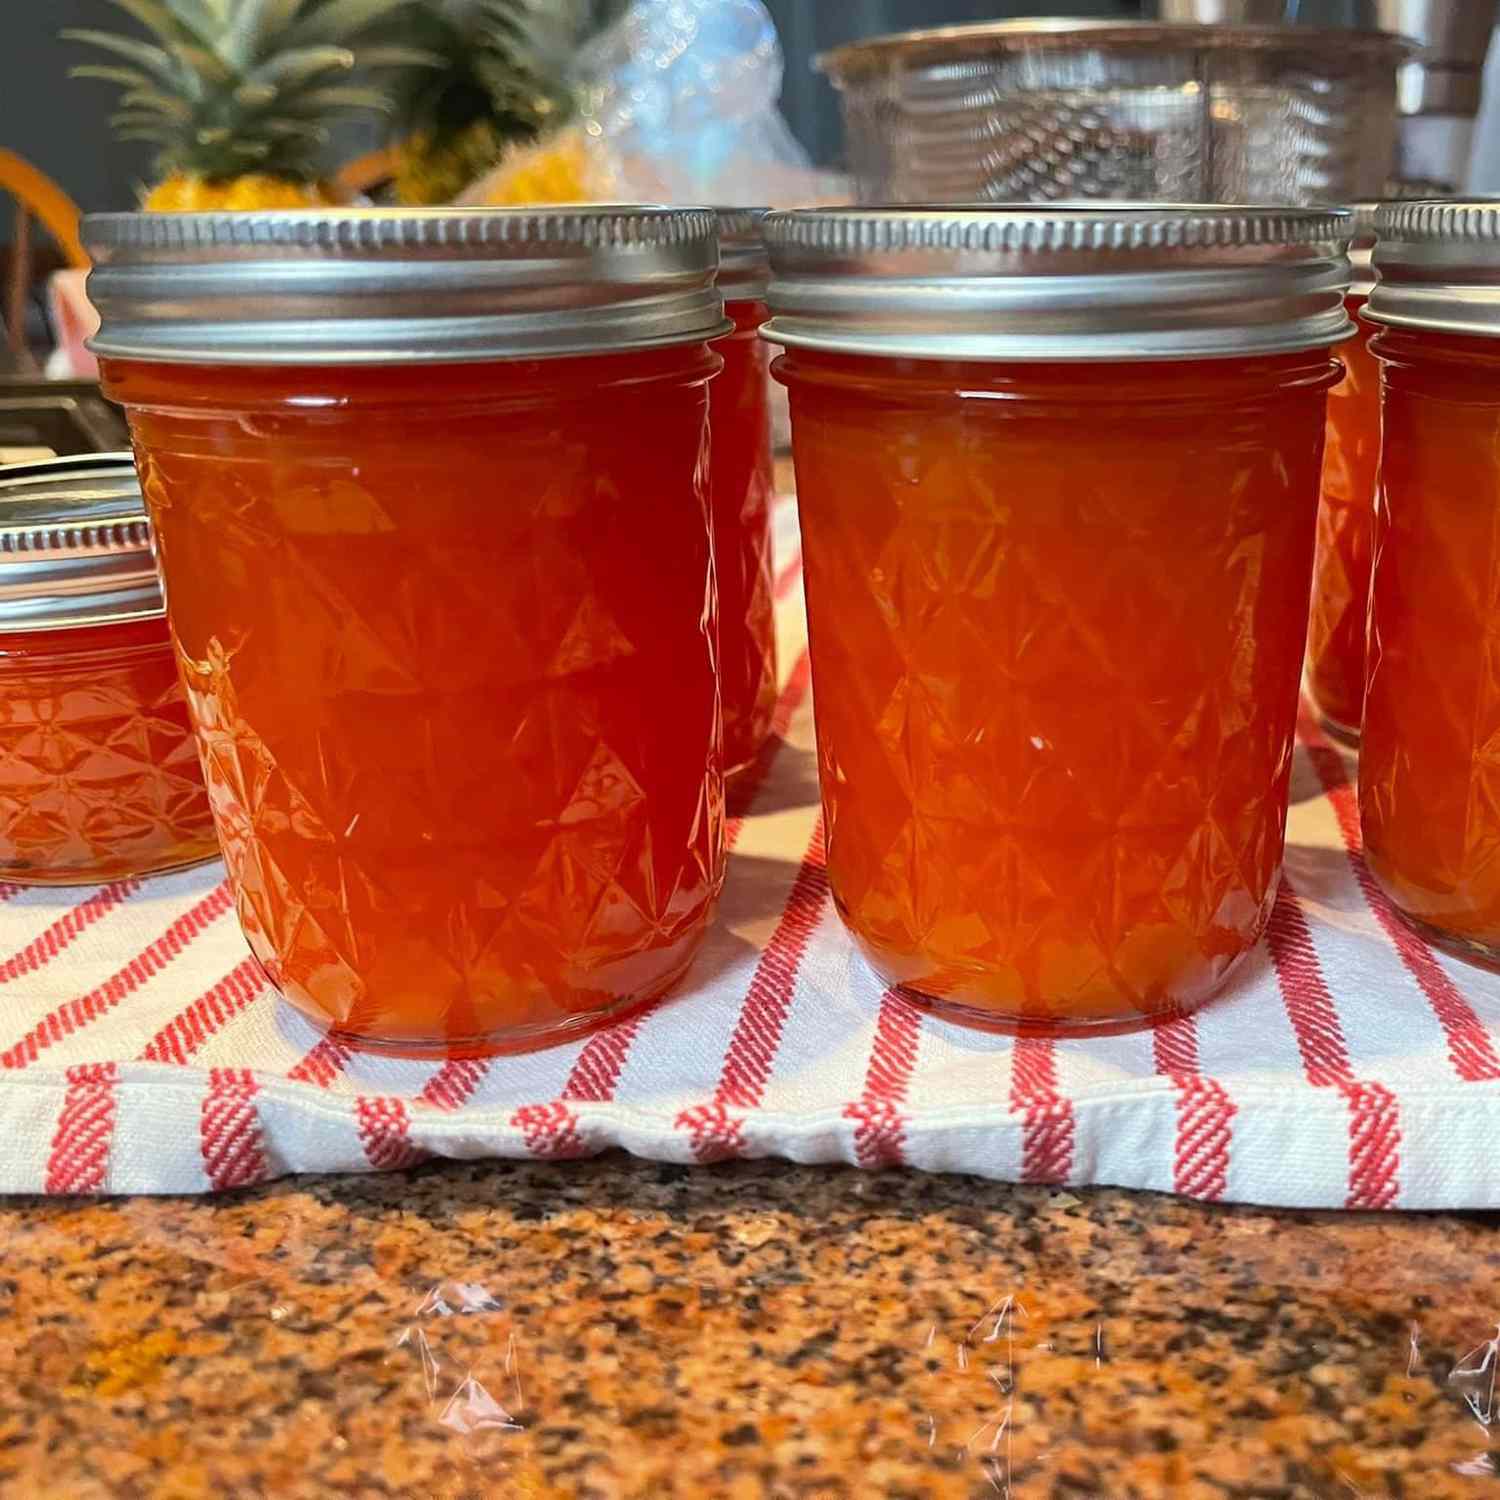 Fresh Papaya Jam